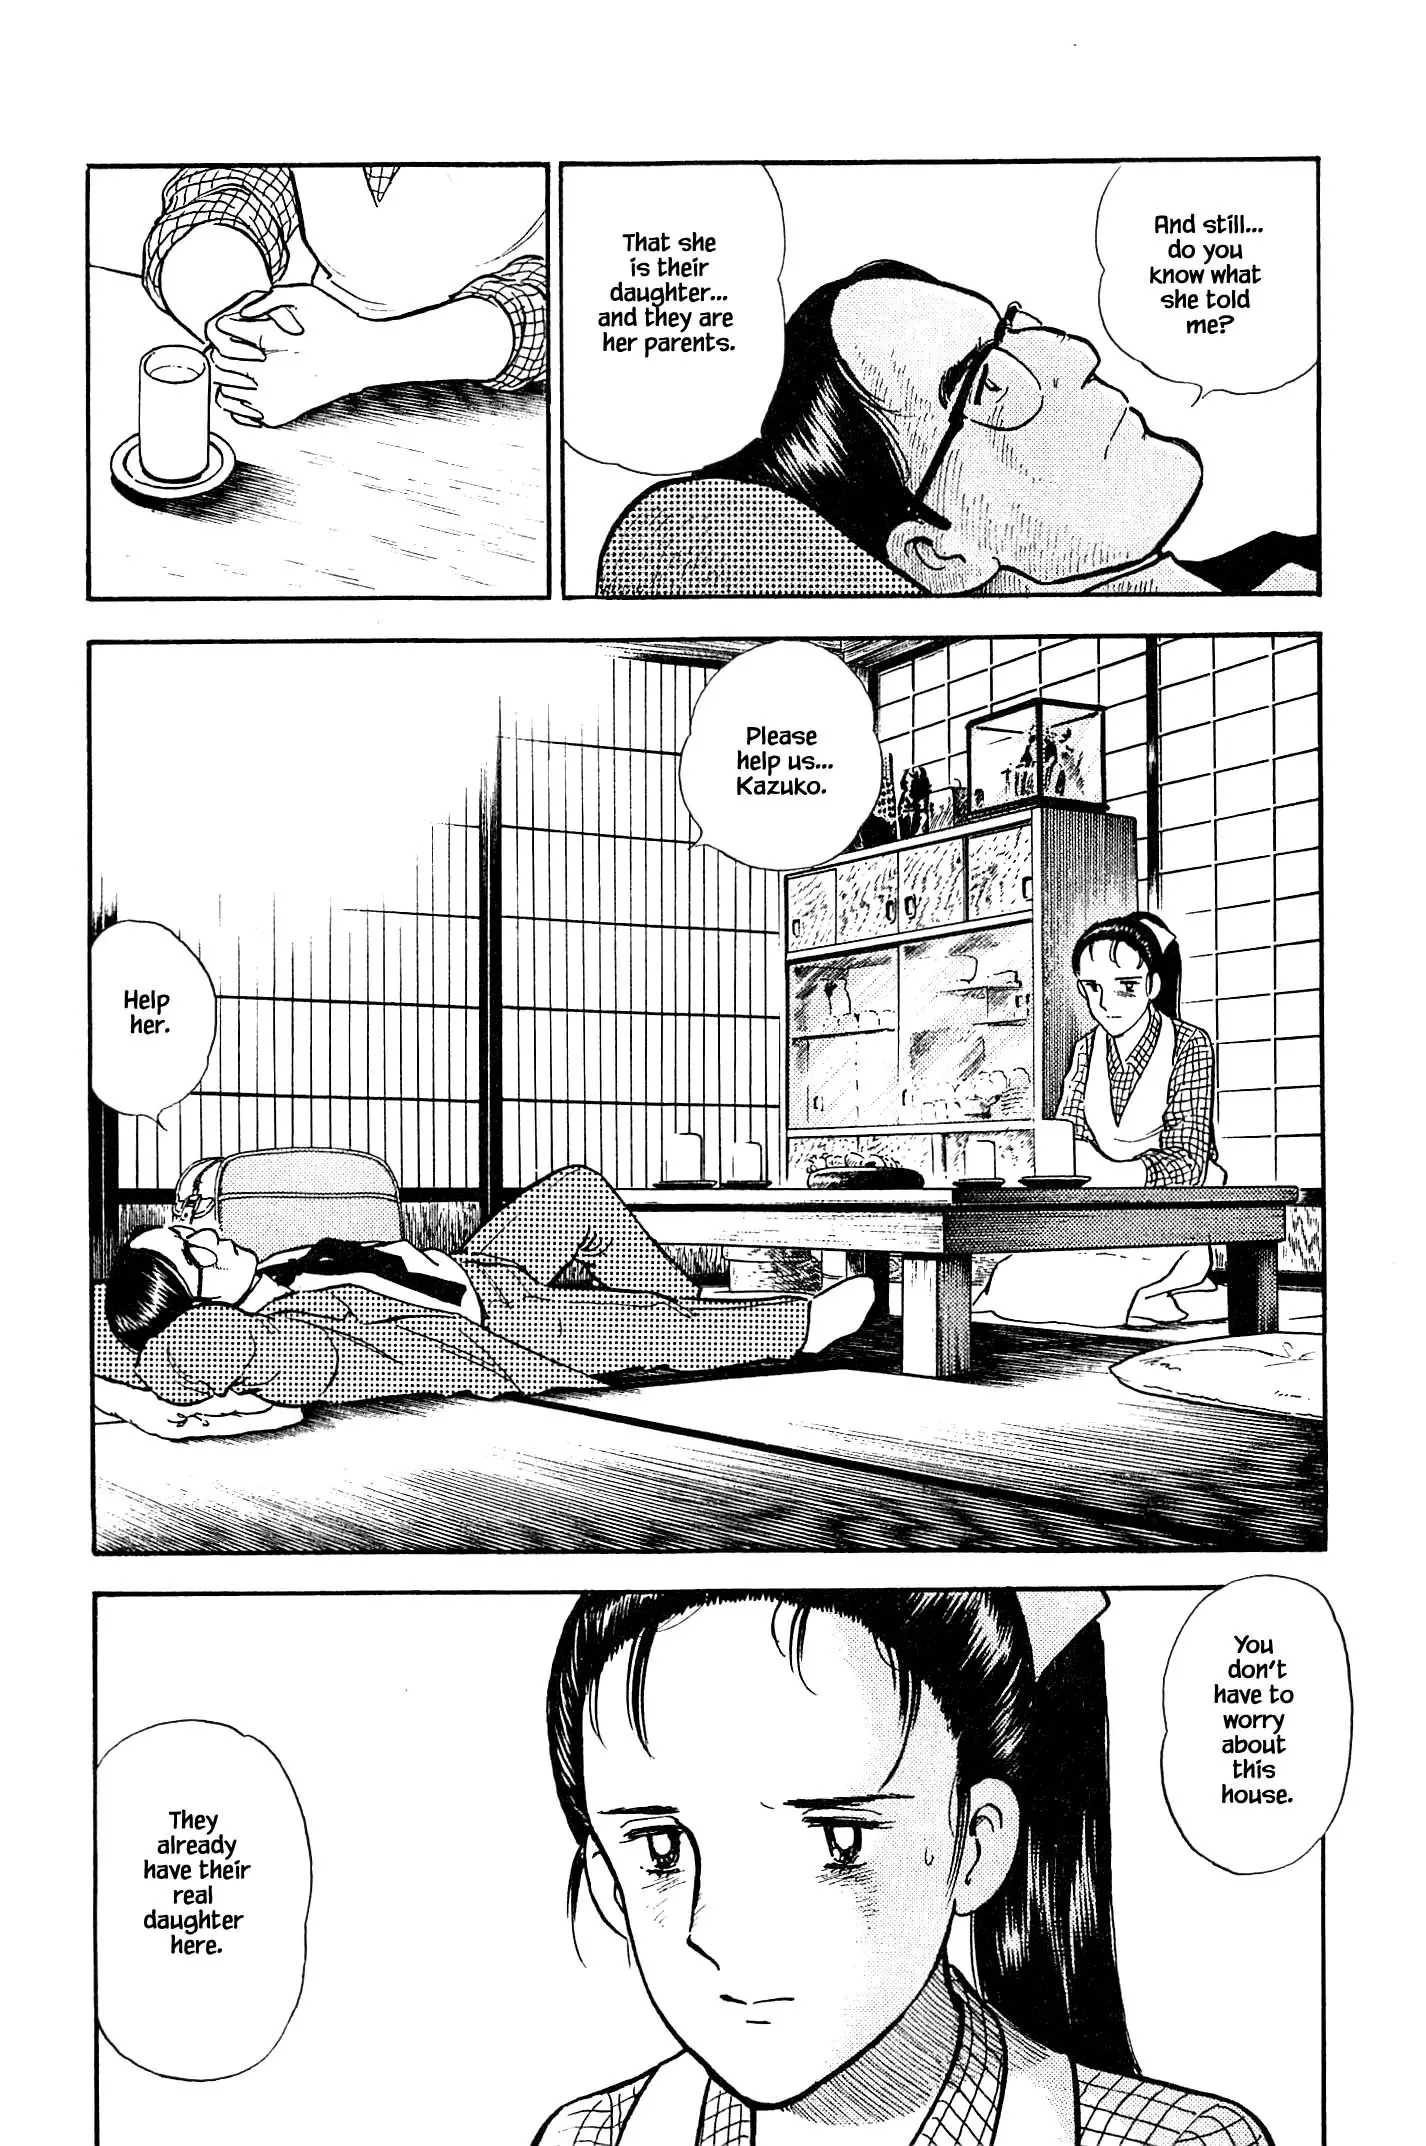 Natsuko's Sake - 113 page 15-2198dc0d